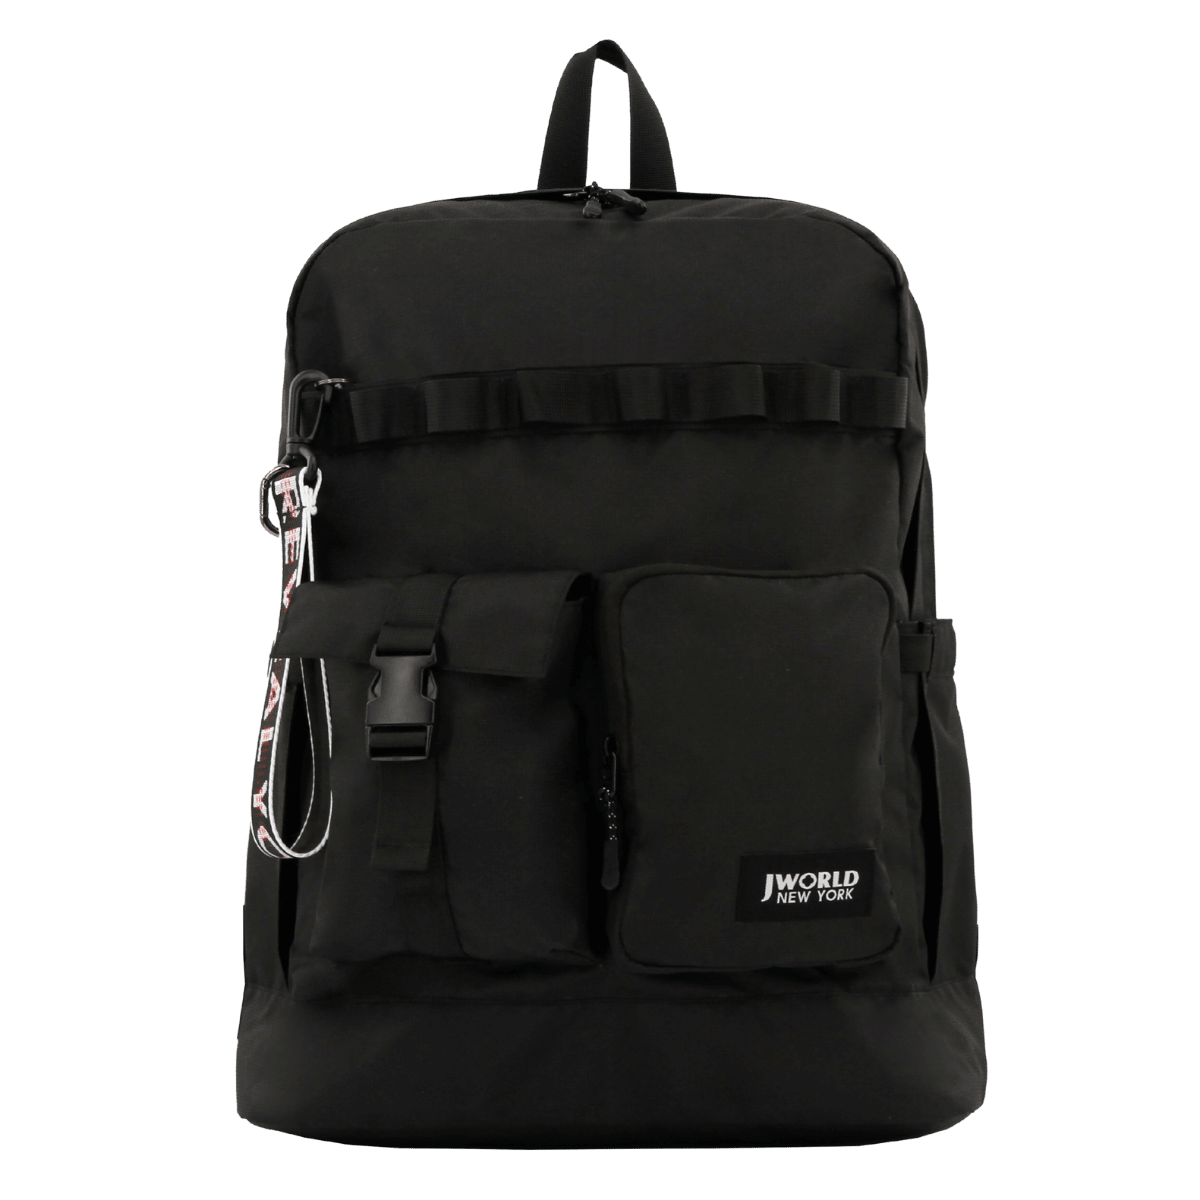 Fenix Backpack with keyring Puller - JWorldstore